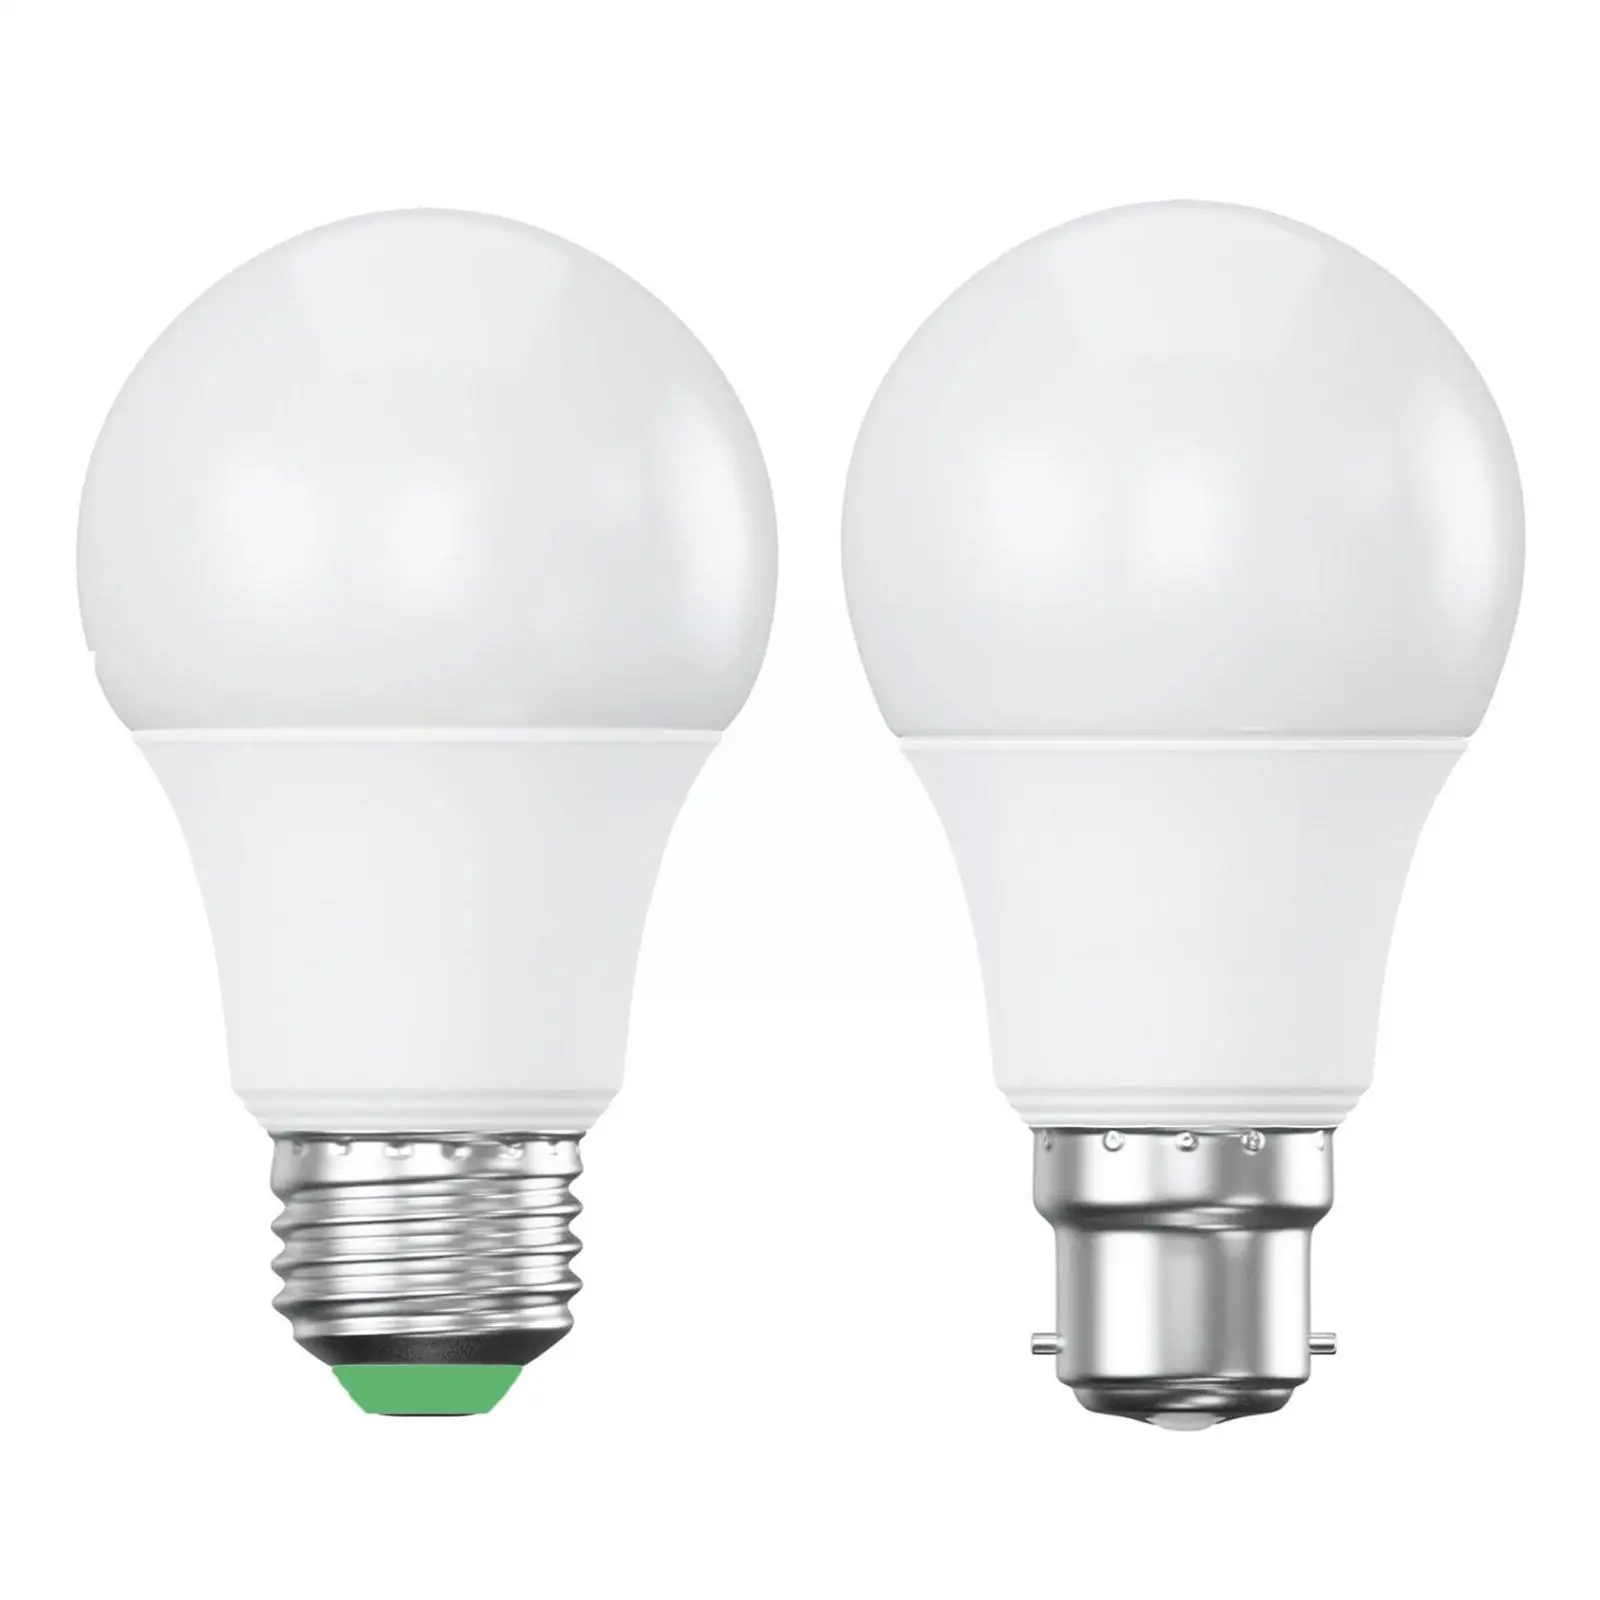 

Светодиодные лампы E27 B22 12 Вт, реальная мощность 12 Вт, теплый белый свет, суперлегкая лампа для лампы, 1 шт. W4t1